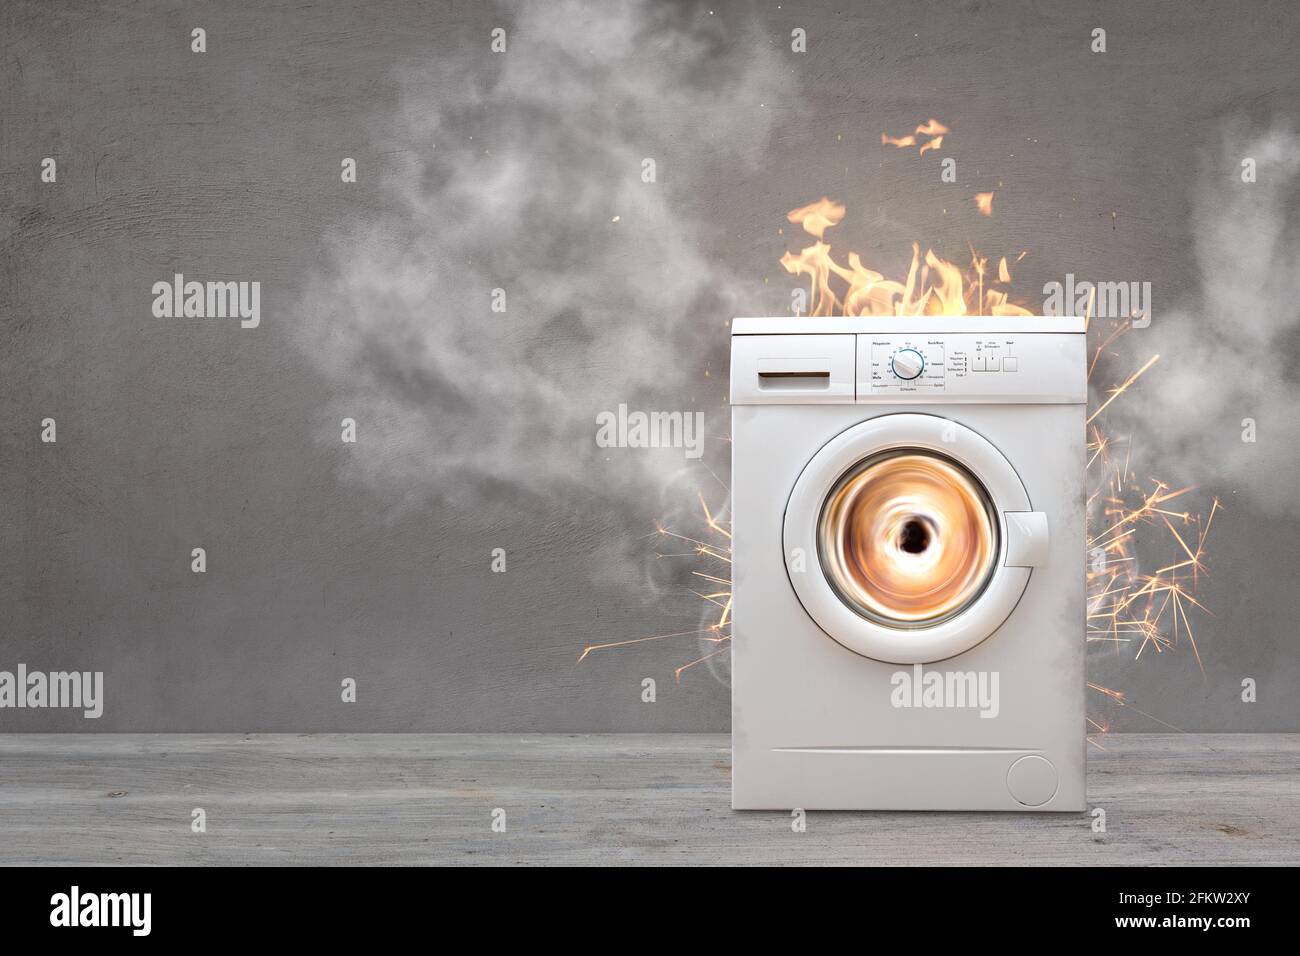 Lavadora rota con humo y fuego Fotografía de stock - Alamy